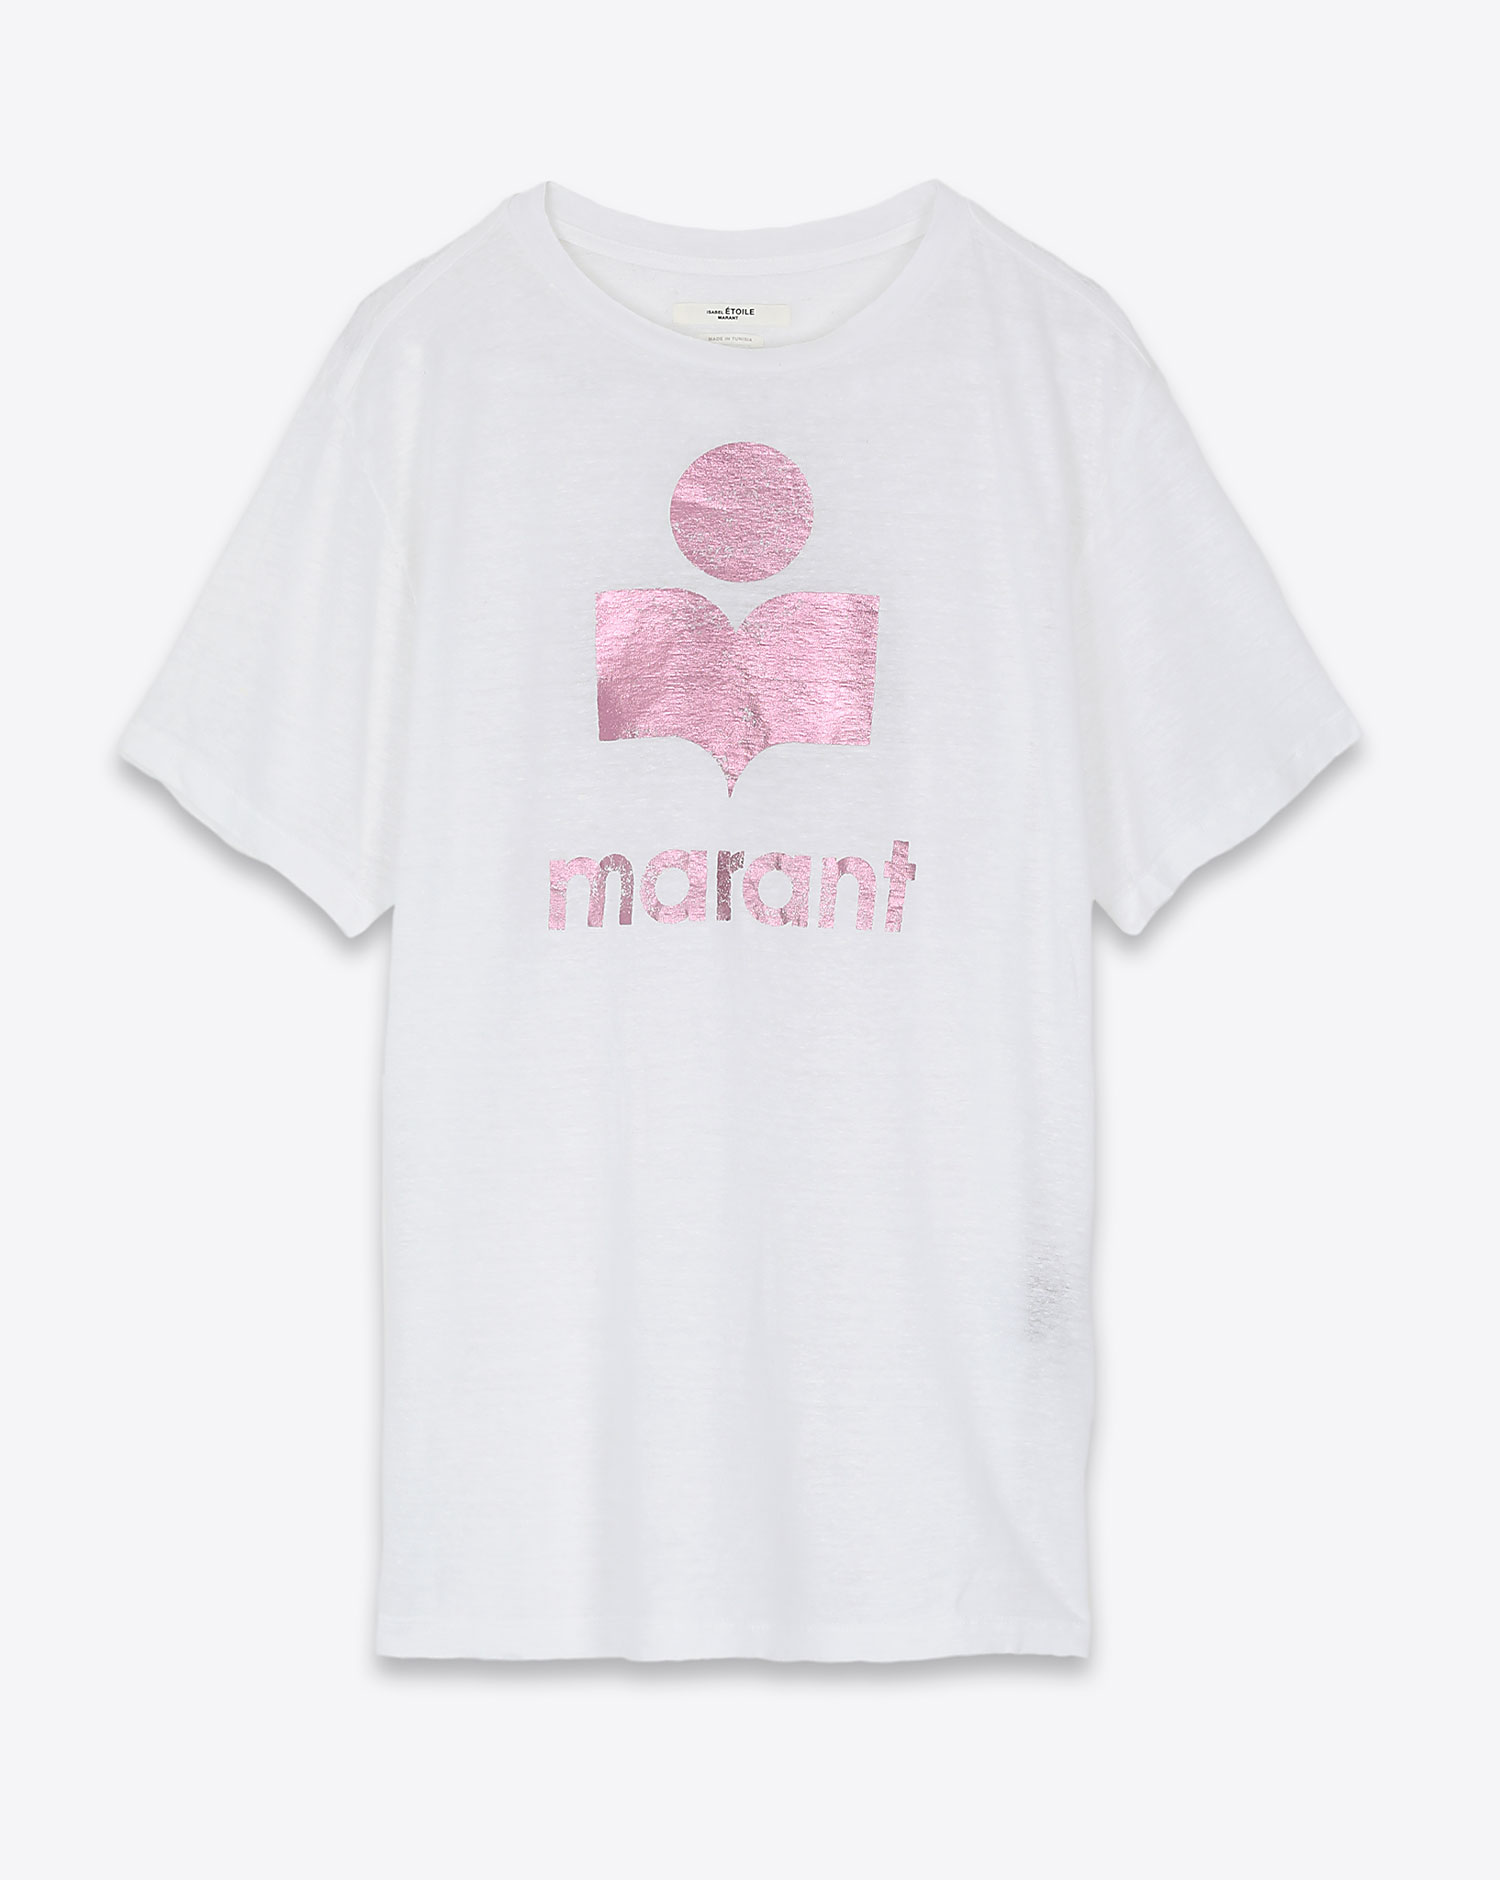 Tee-shirt en lin blanc logo métallisé rose Zewel Isabel Marant Etoile. Face.